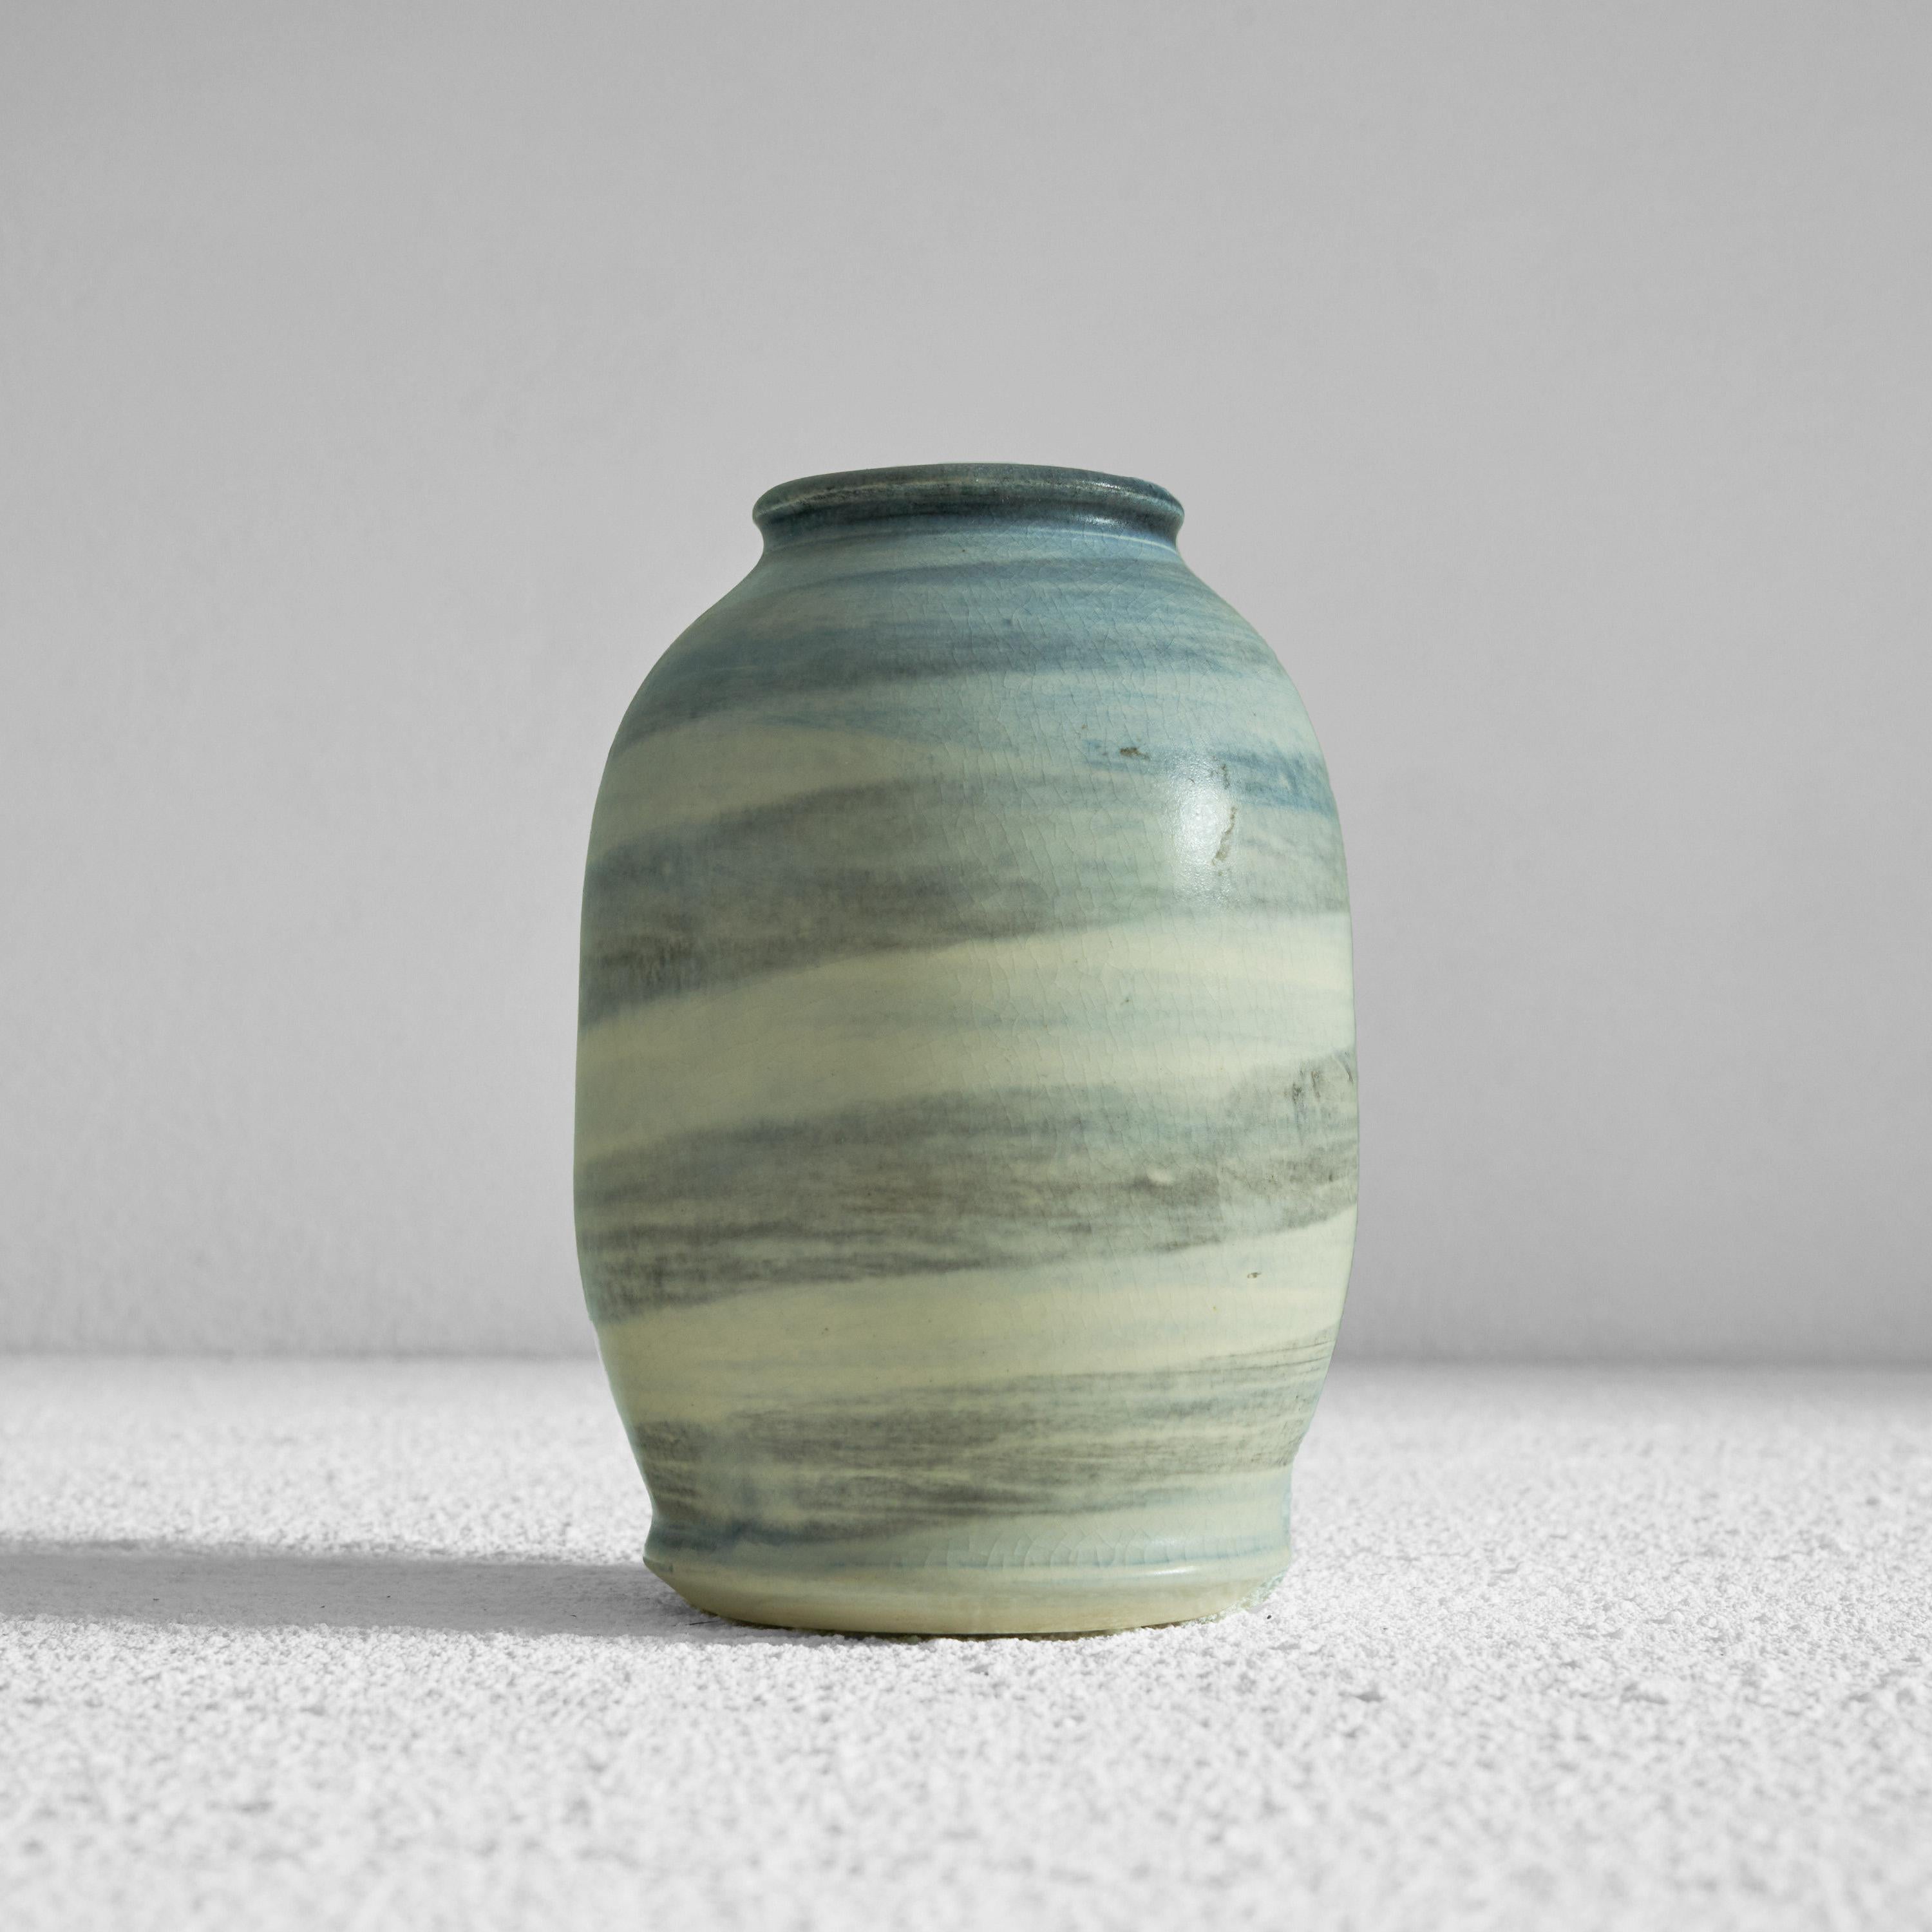 Vase en poterie de studio à glaçure peinte. Milieu du 20e siècle.

Il s'agit d'un magnifique petit vase décoré de façon picturale. Un plaisir pour les yeux et une pièce amusante sur votre bureau, votre armoire ou votre table. Cette pièce en